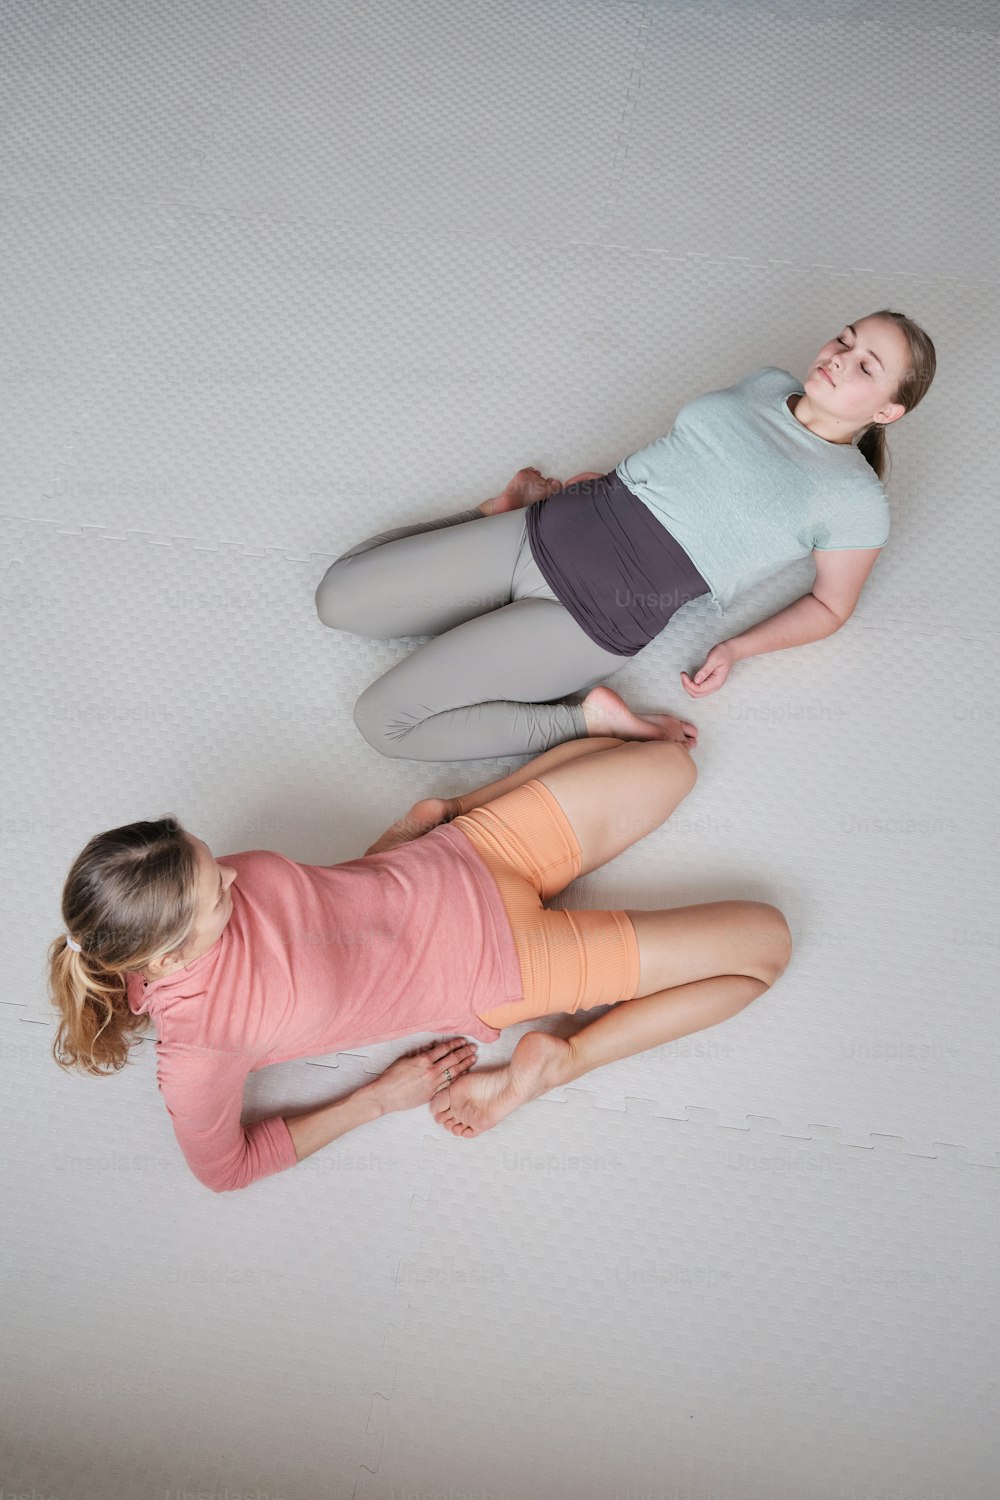 Zwei junge Mädchen liegen zusammen auf einer Matratze